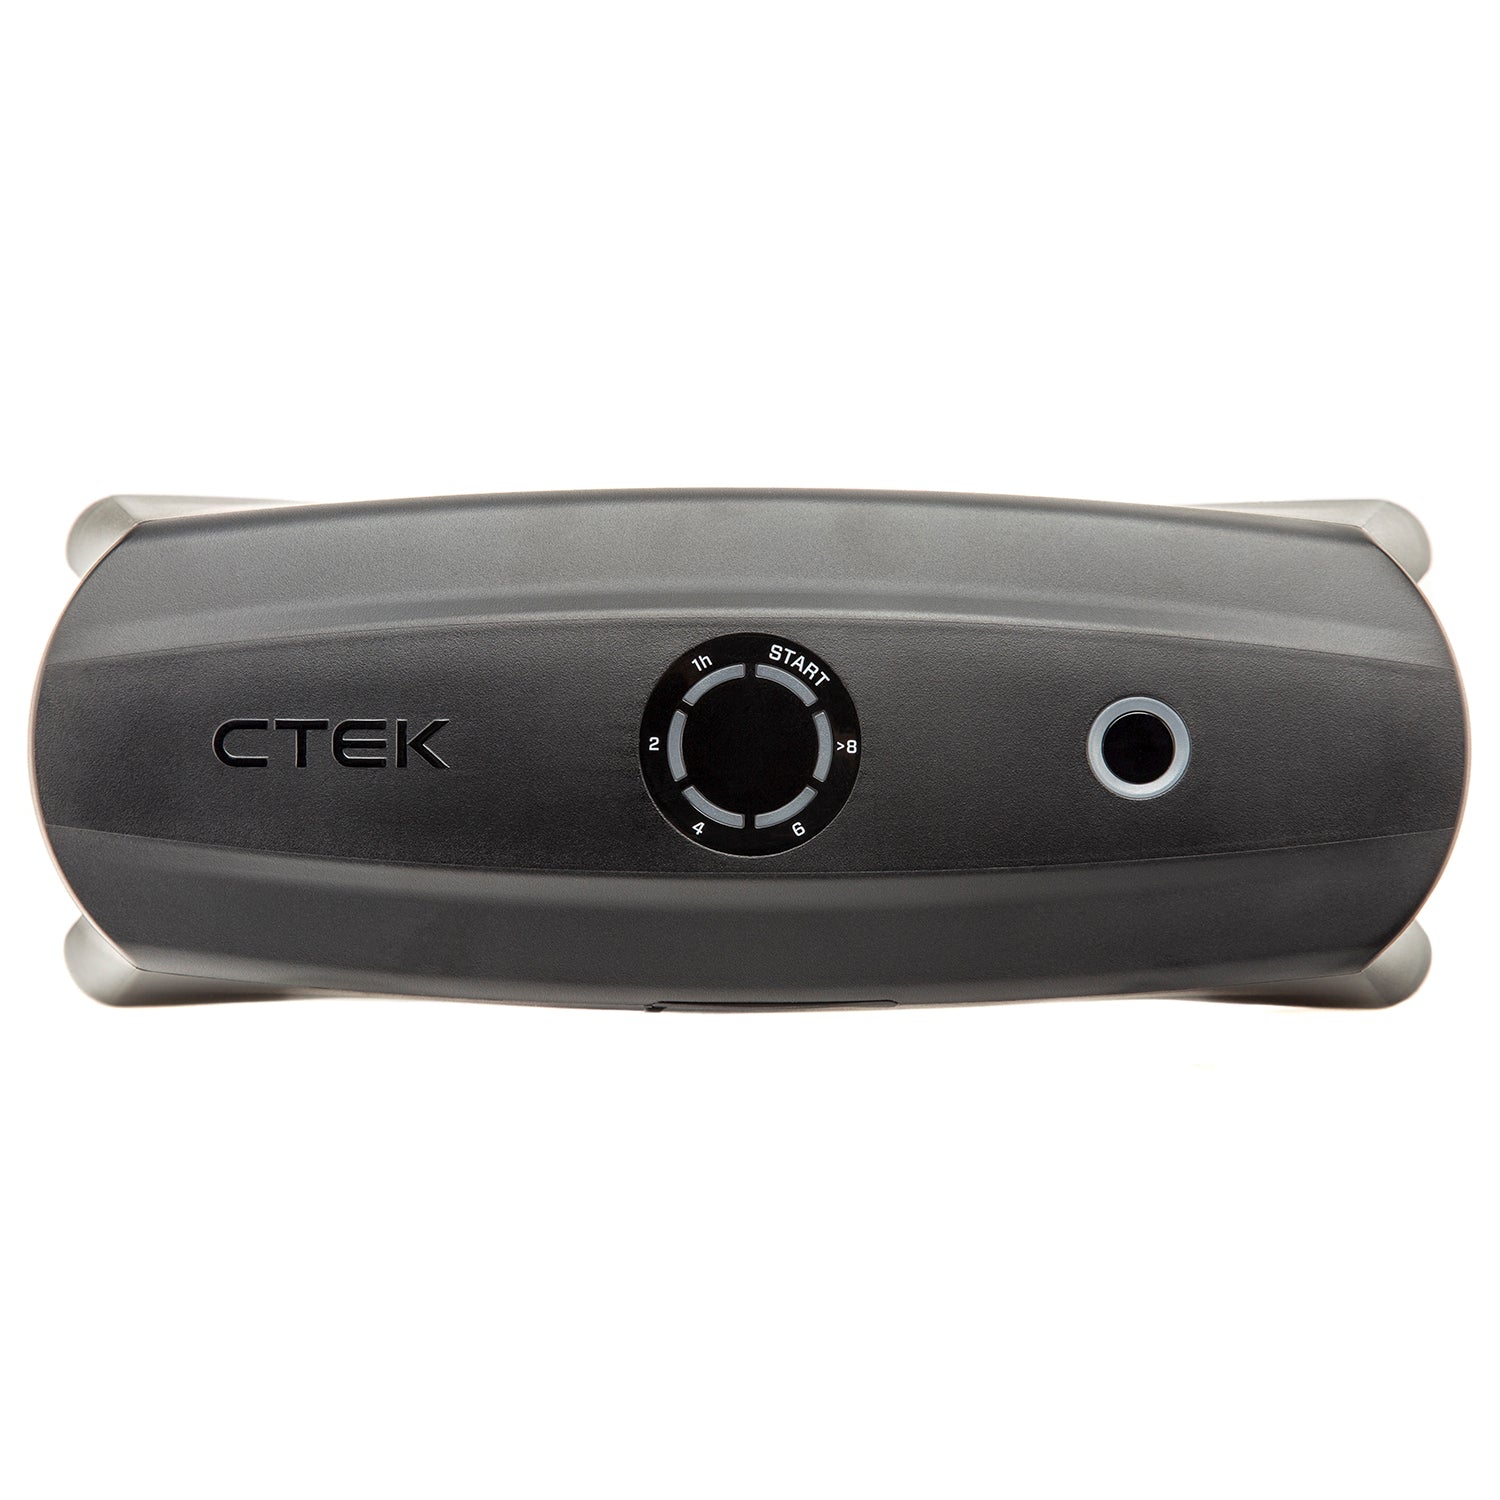 CTEK (40-462)CS Free, 12V Portable Battery Charger, Solar Power